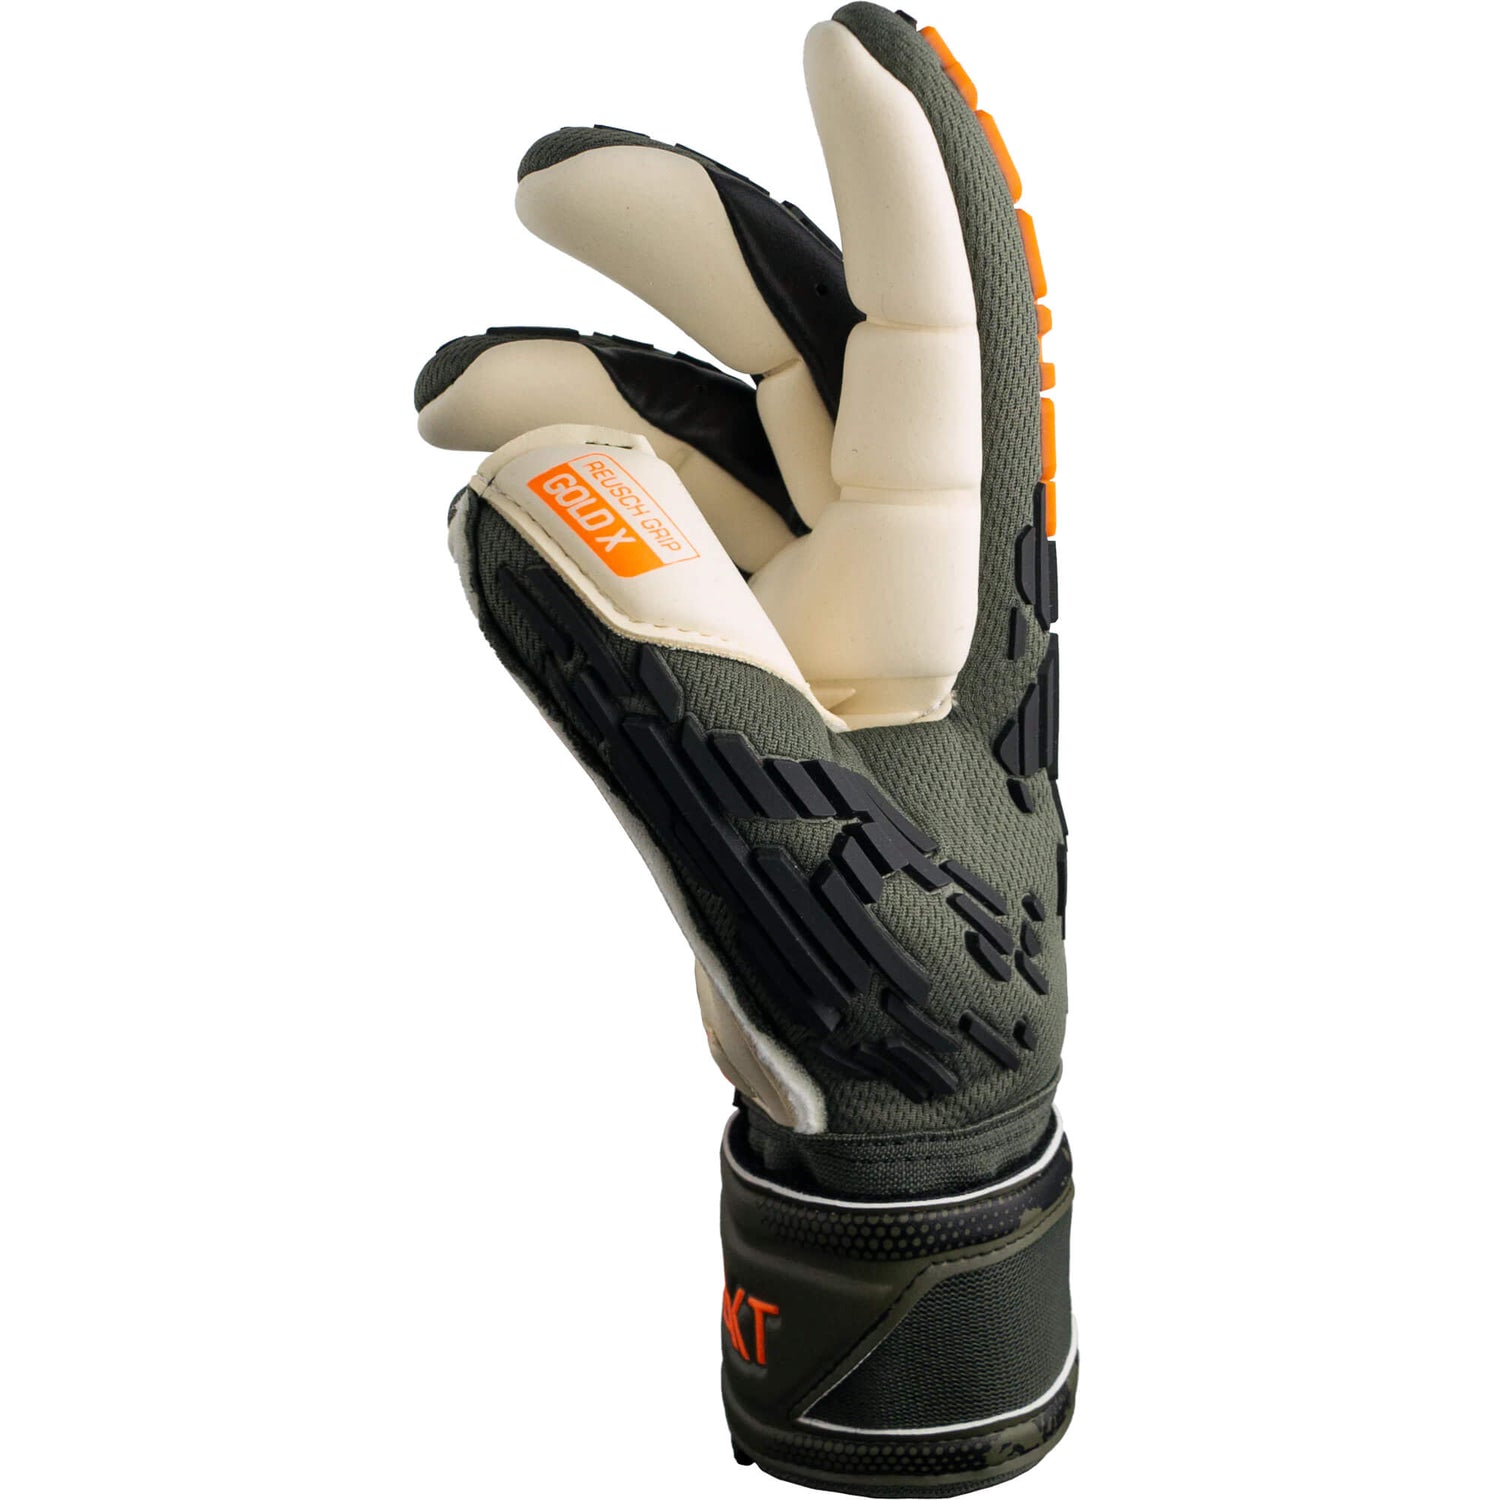 Reusch Attrakt Freegel Gold X Finger Support Goalkeeper Gloves (Single - Side)